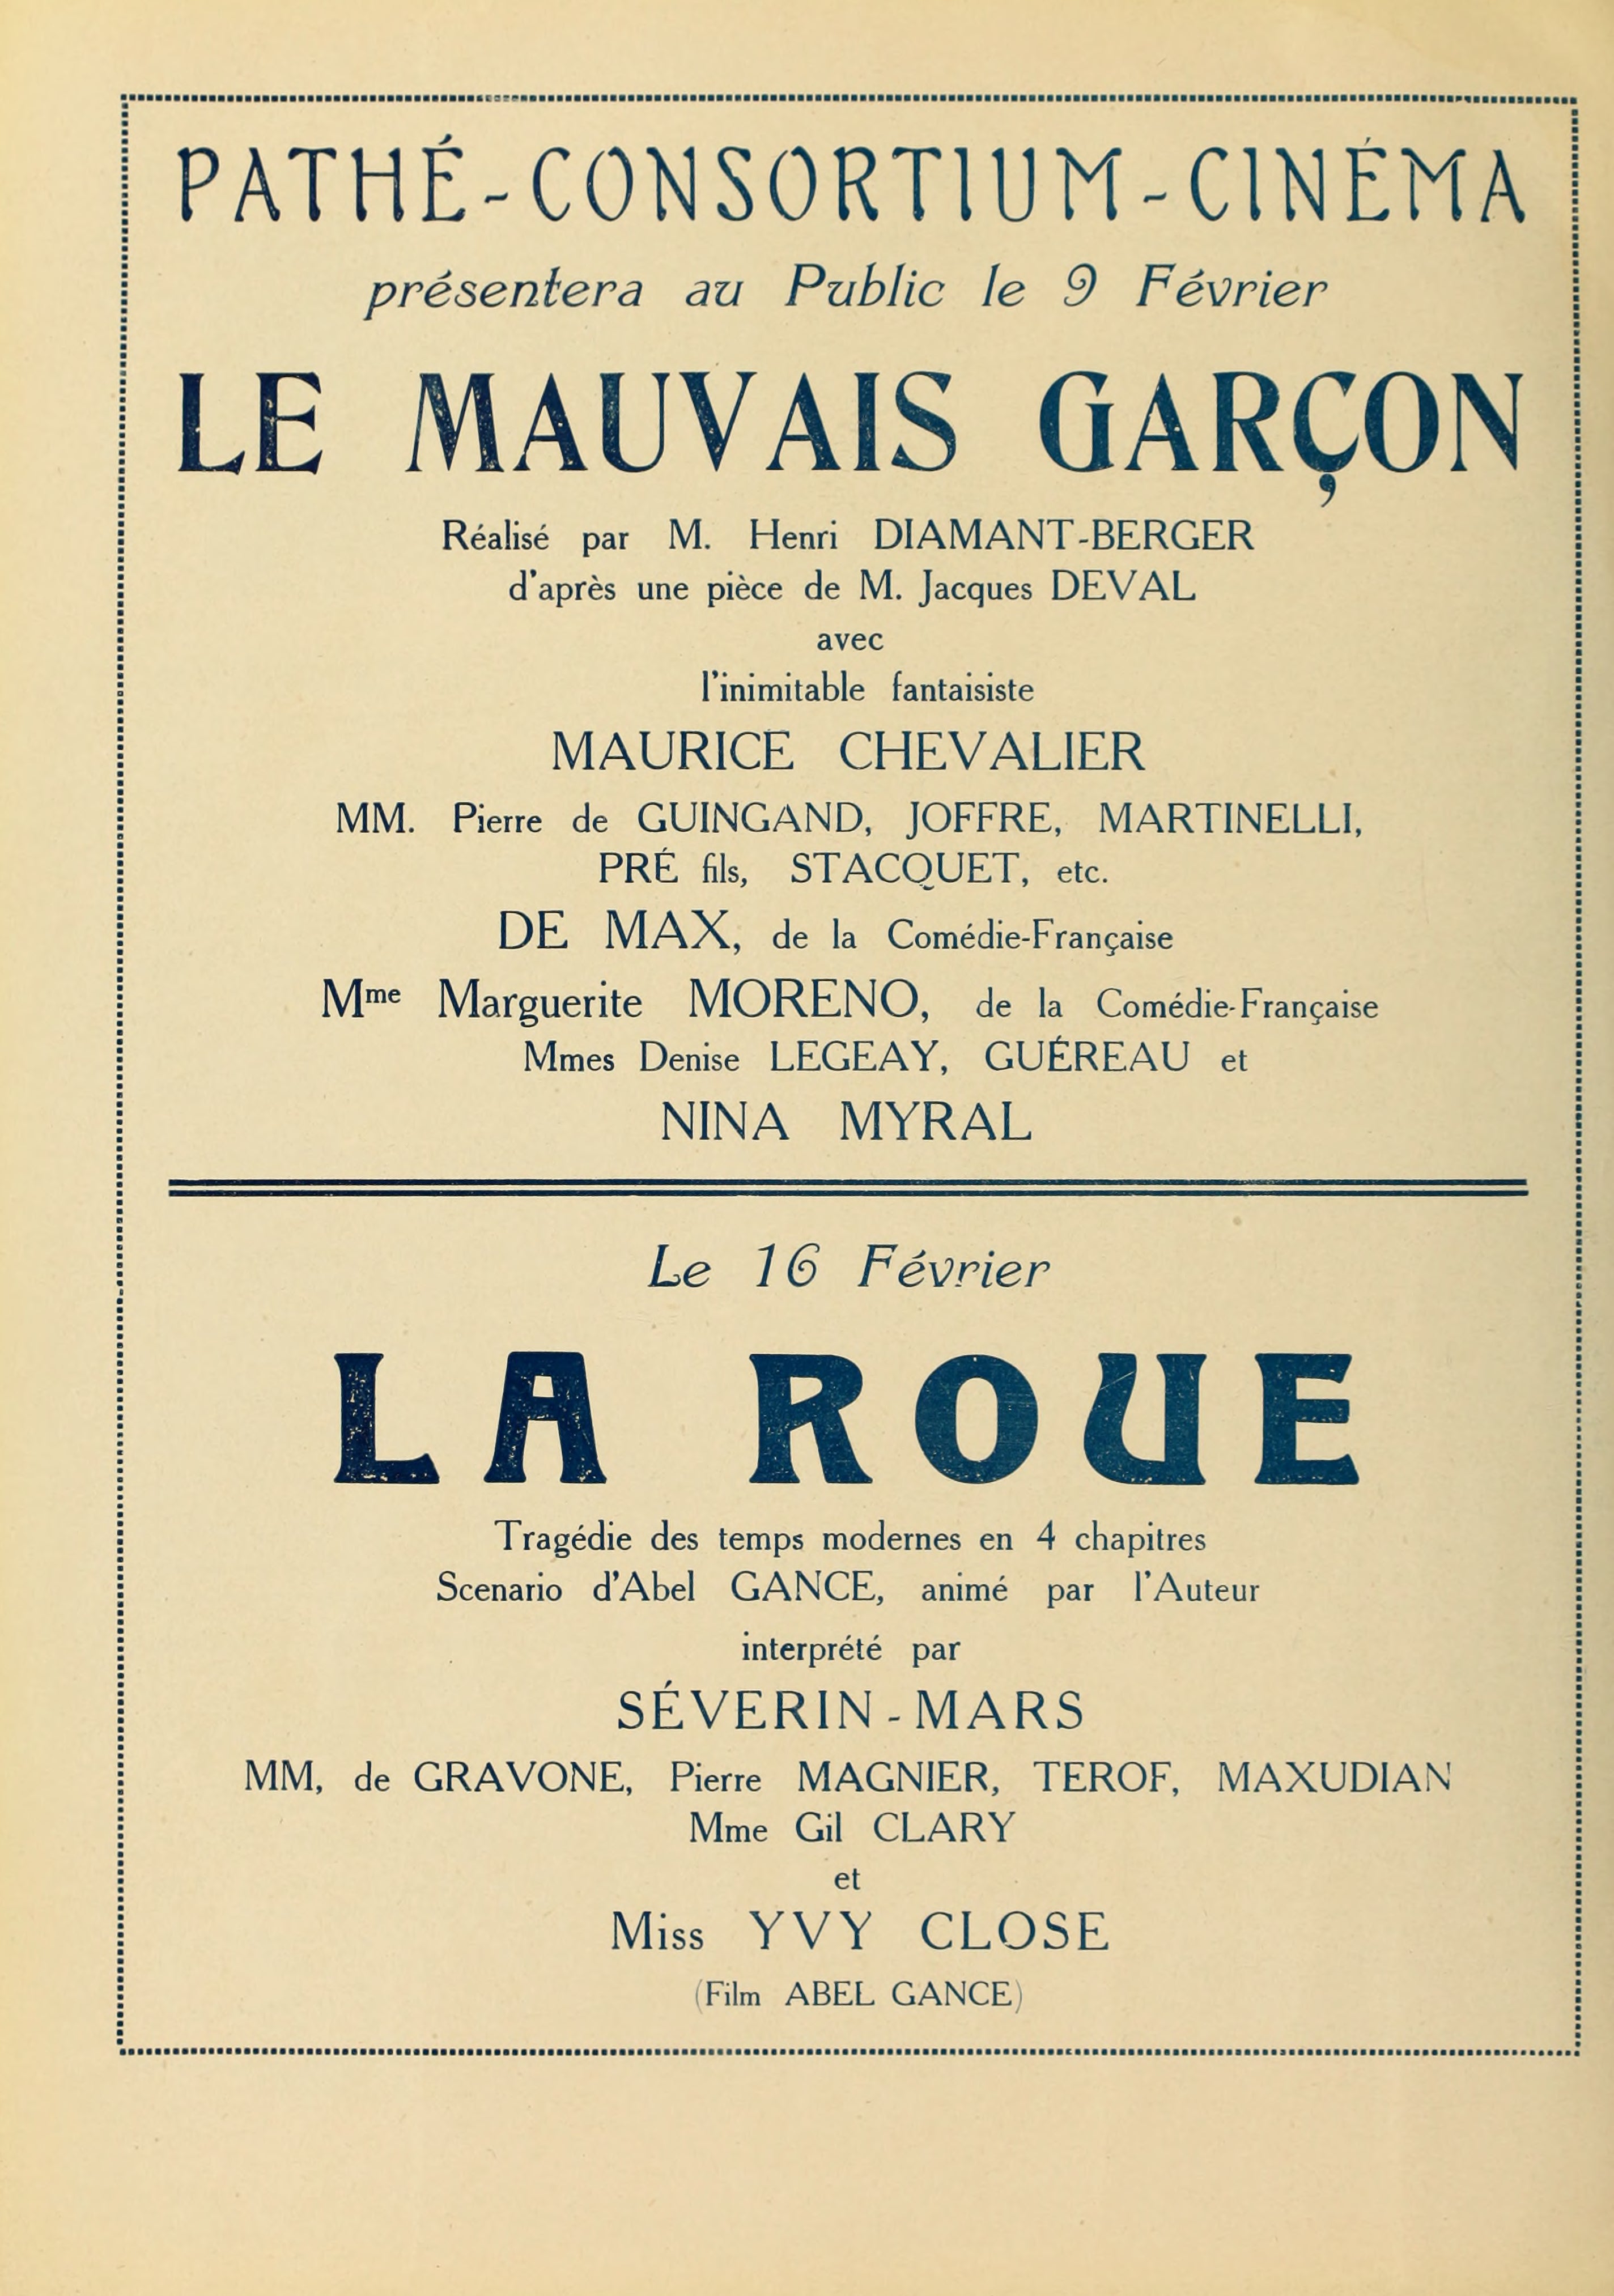 Le mauvais garçon (1923) | La roue (1923) | www.vintoz.com